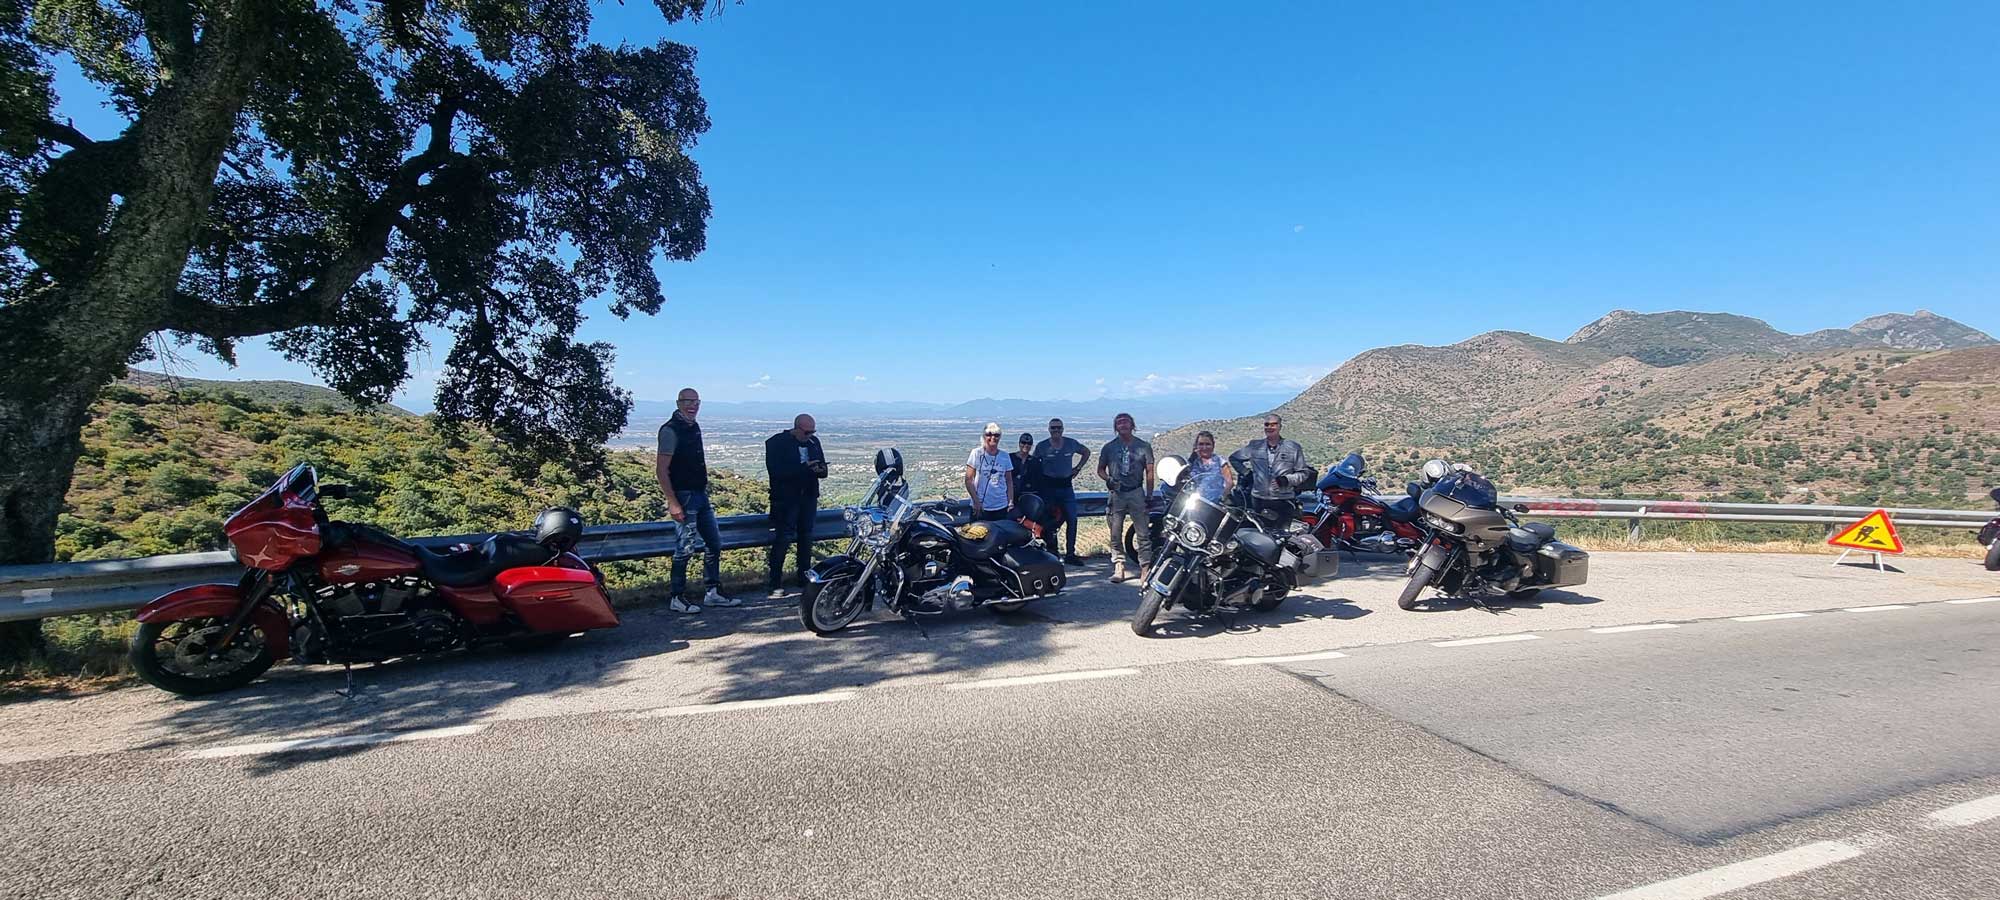 Bikerpause bei der Tagestour mit den Motorrädern am sechsten Tag der Katalonien Reise von M-Motorradreisen 2022